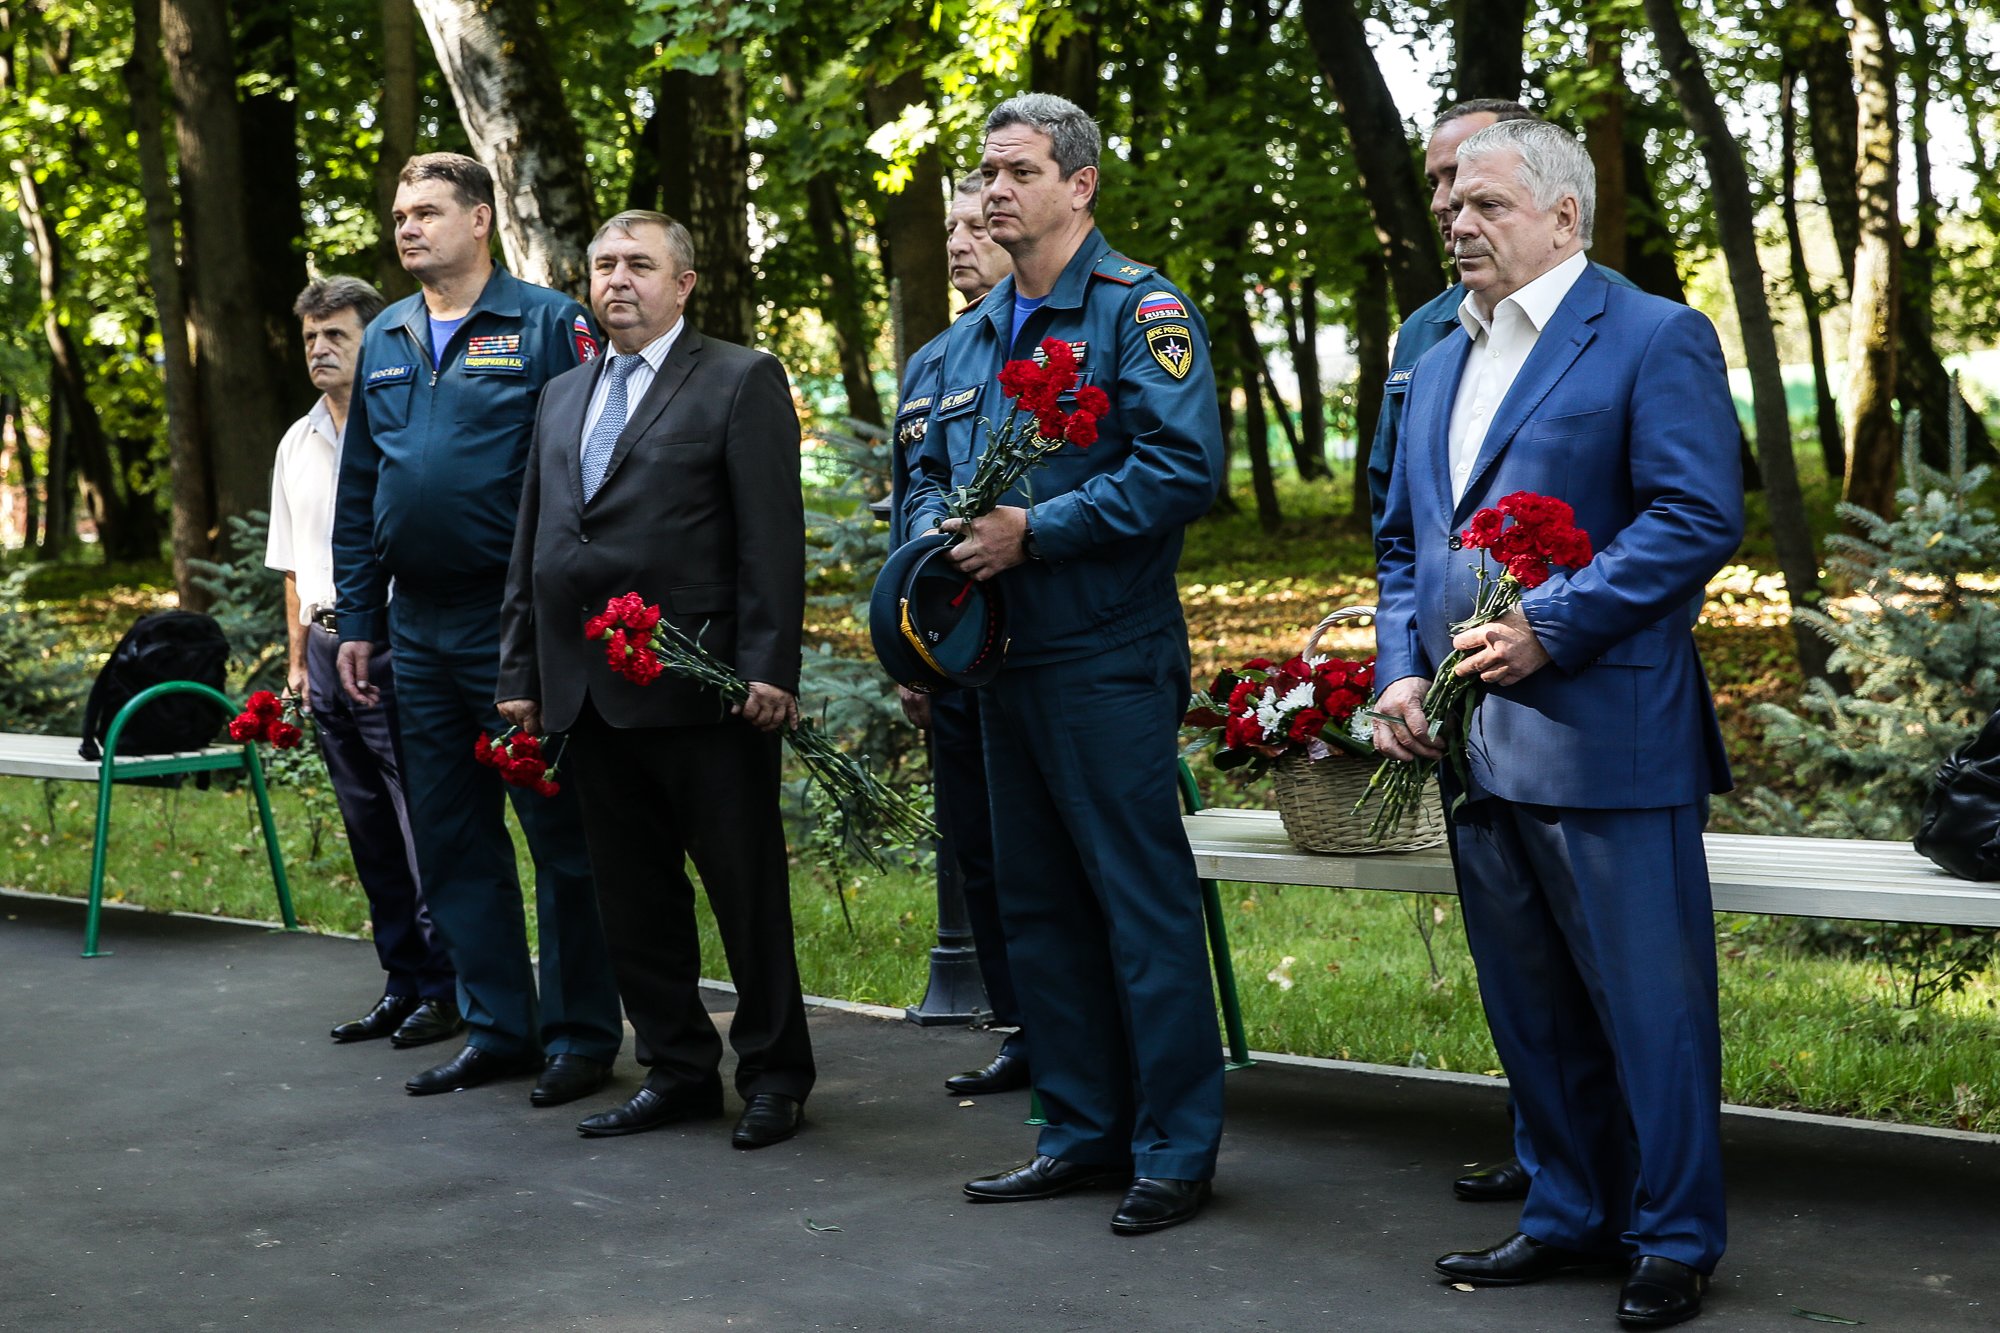 Пожарно-спасательный центр Москвы отметил свой юбилей - 10 лет!